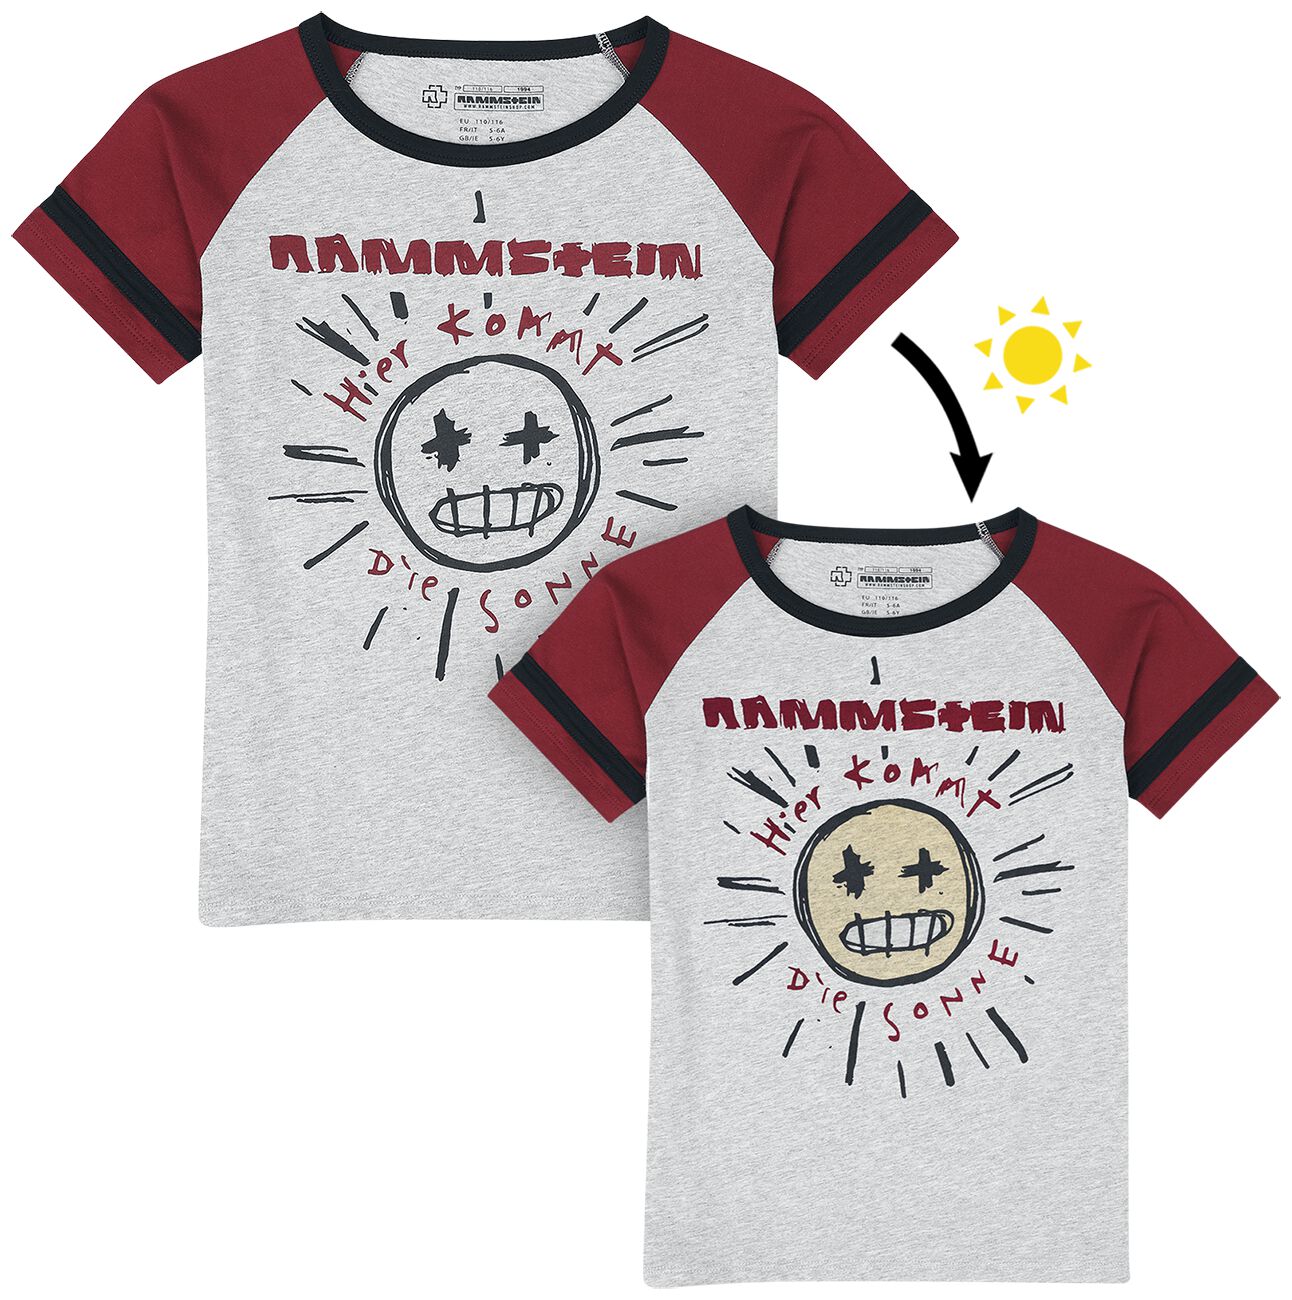 Rammstein T-Shirt für Kinder - Kids - Sonne - für Mädchen & Jungen - grau/rot  - Lizenziertes Merchandise!